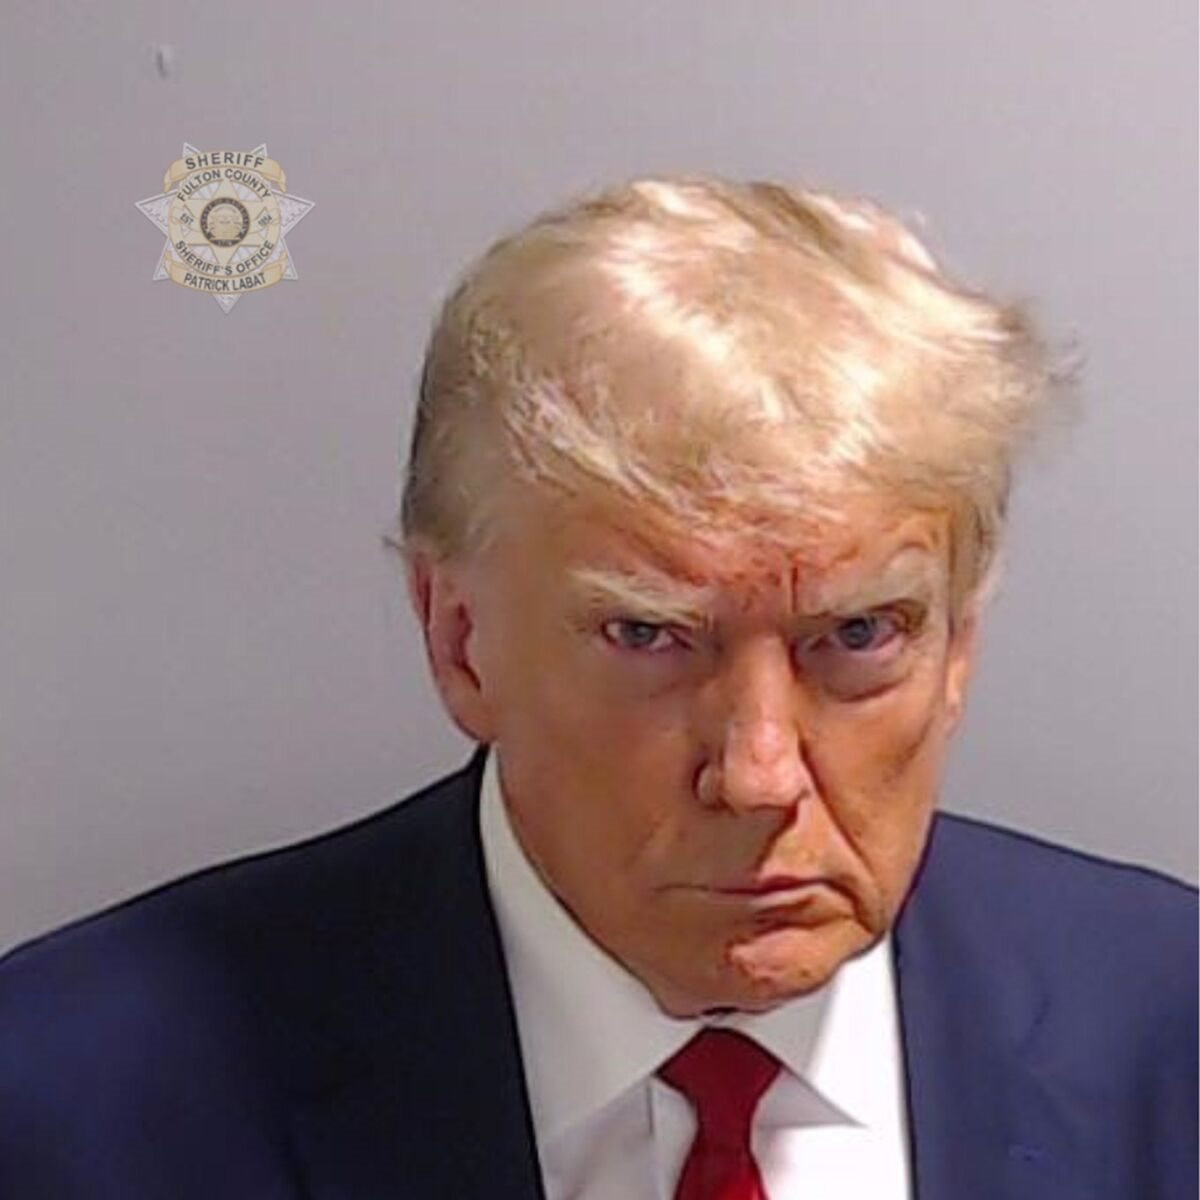 Tấm ảnh trong hồ sơ nhà tù đã mang về cho ông Trump 7,1 triệu USD tiền gây quỹ tranh cử - Ảnh 1.